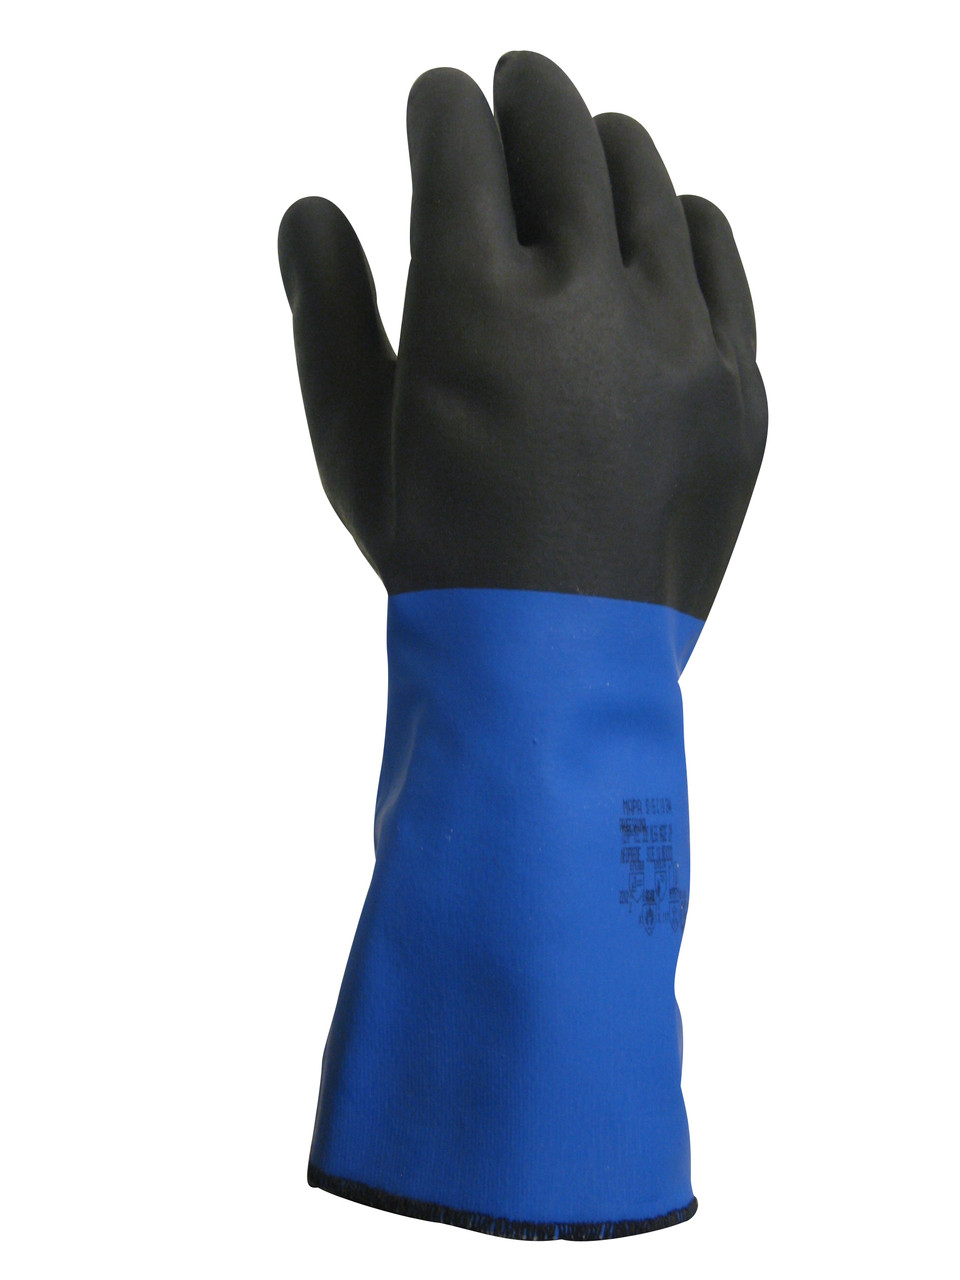 Temp-Tec Thermal Glove - Large